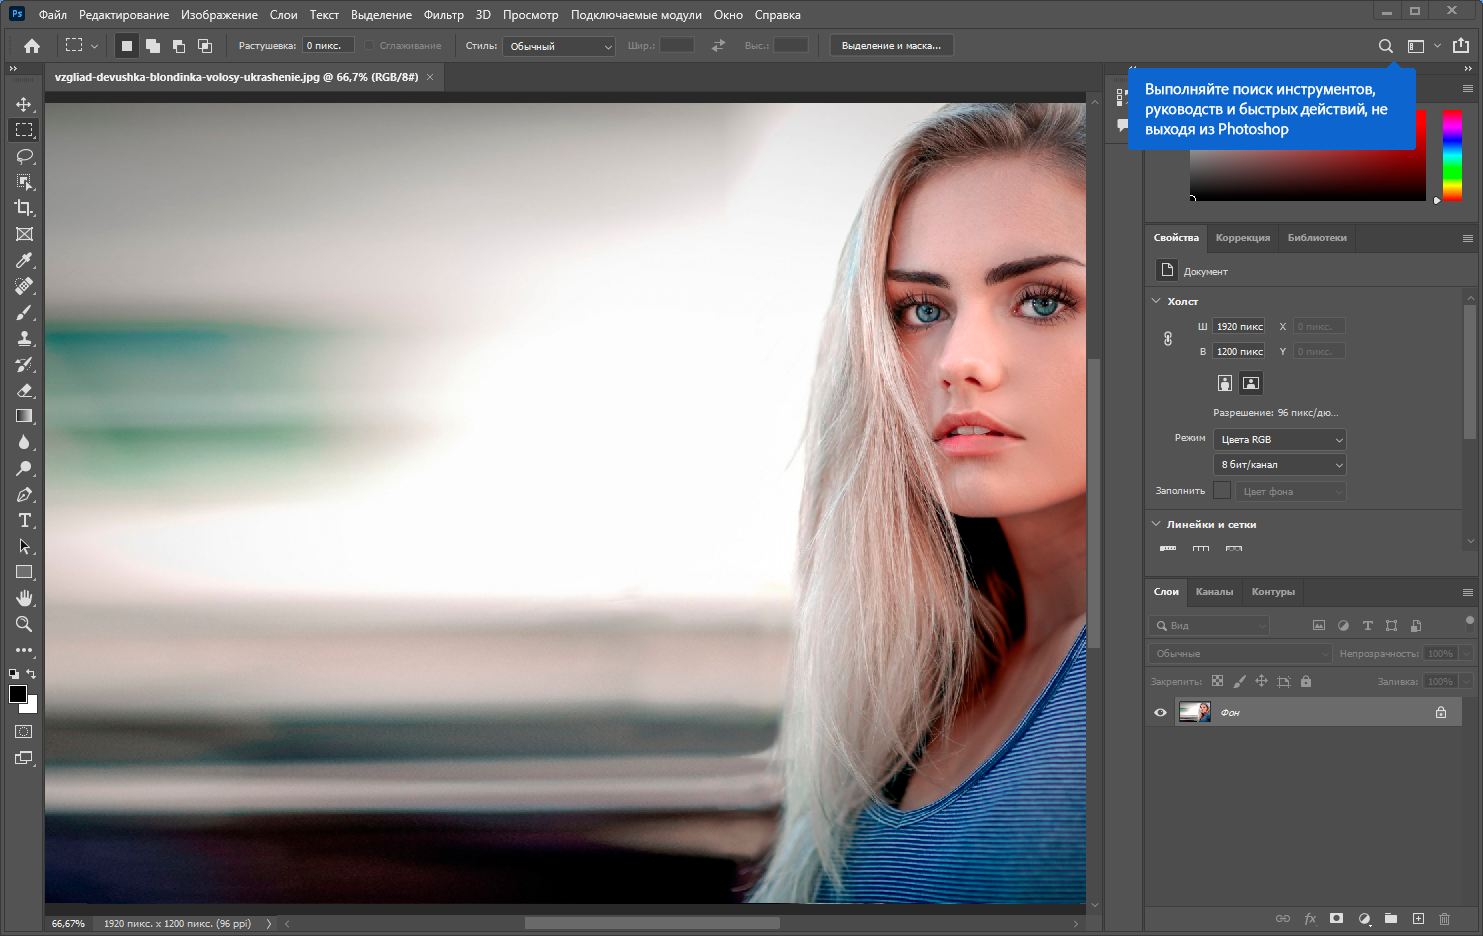 Adobe Photoshop 2022 23.2.1.303 RePack by KpoJIuK [Multi/Ru]